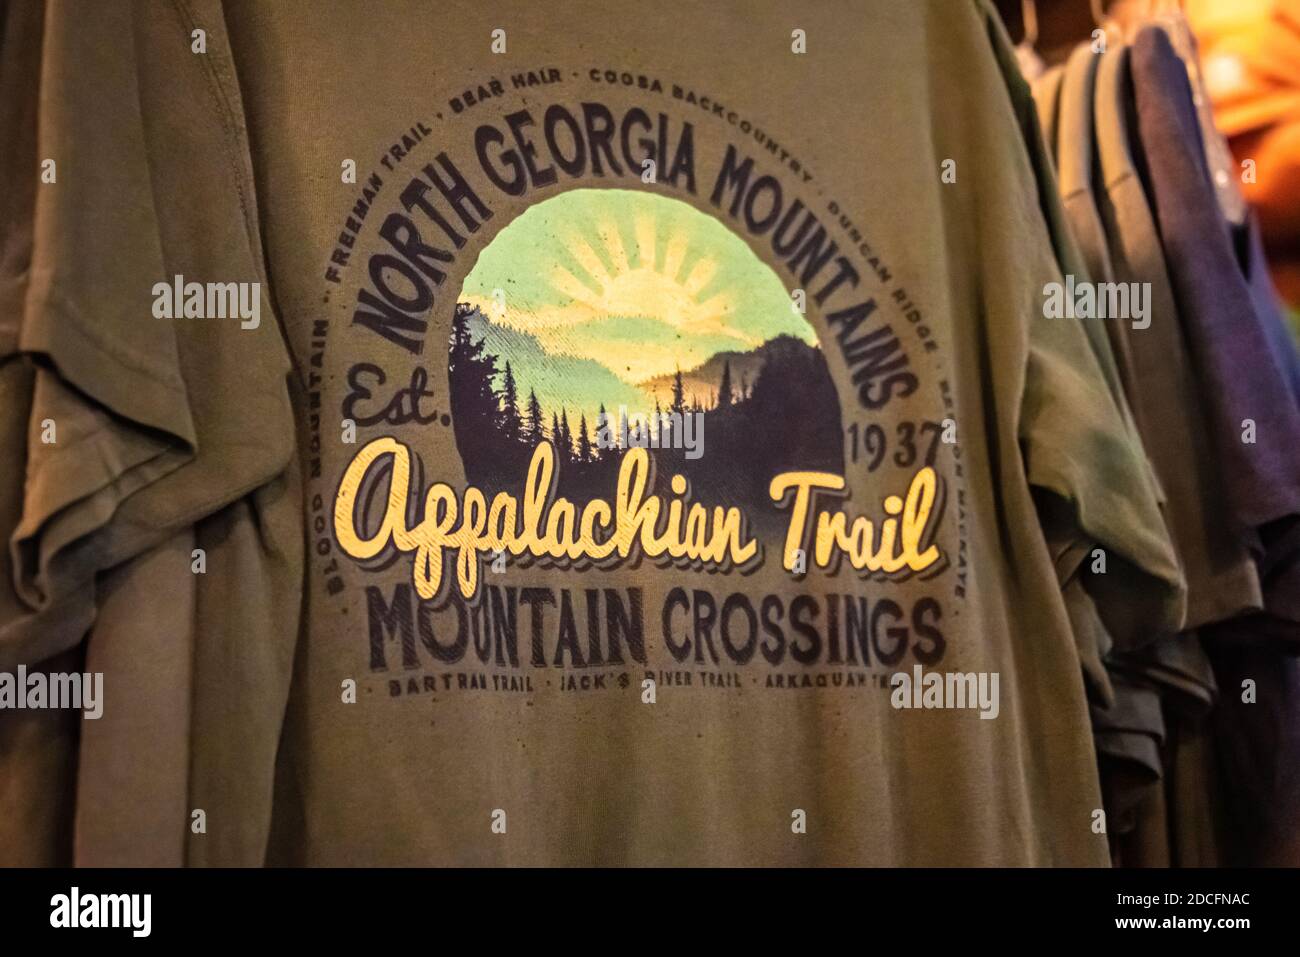 Appalachian Trail / North Georgia Mountains T-shirts à Mountain Crossings sur le Appalachian Trail à Neels Gap à Blairsville, Géorgie. (ÉTATS-UNIS) Banque D'Images